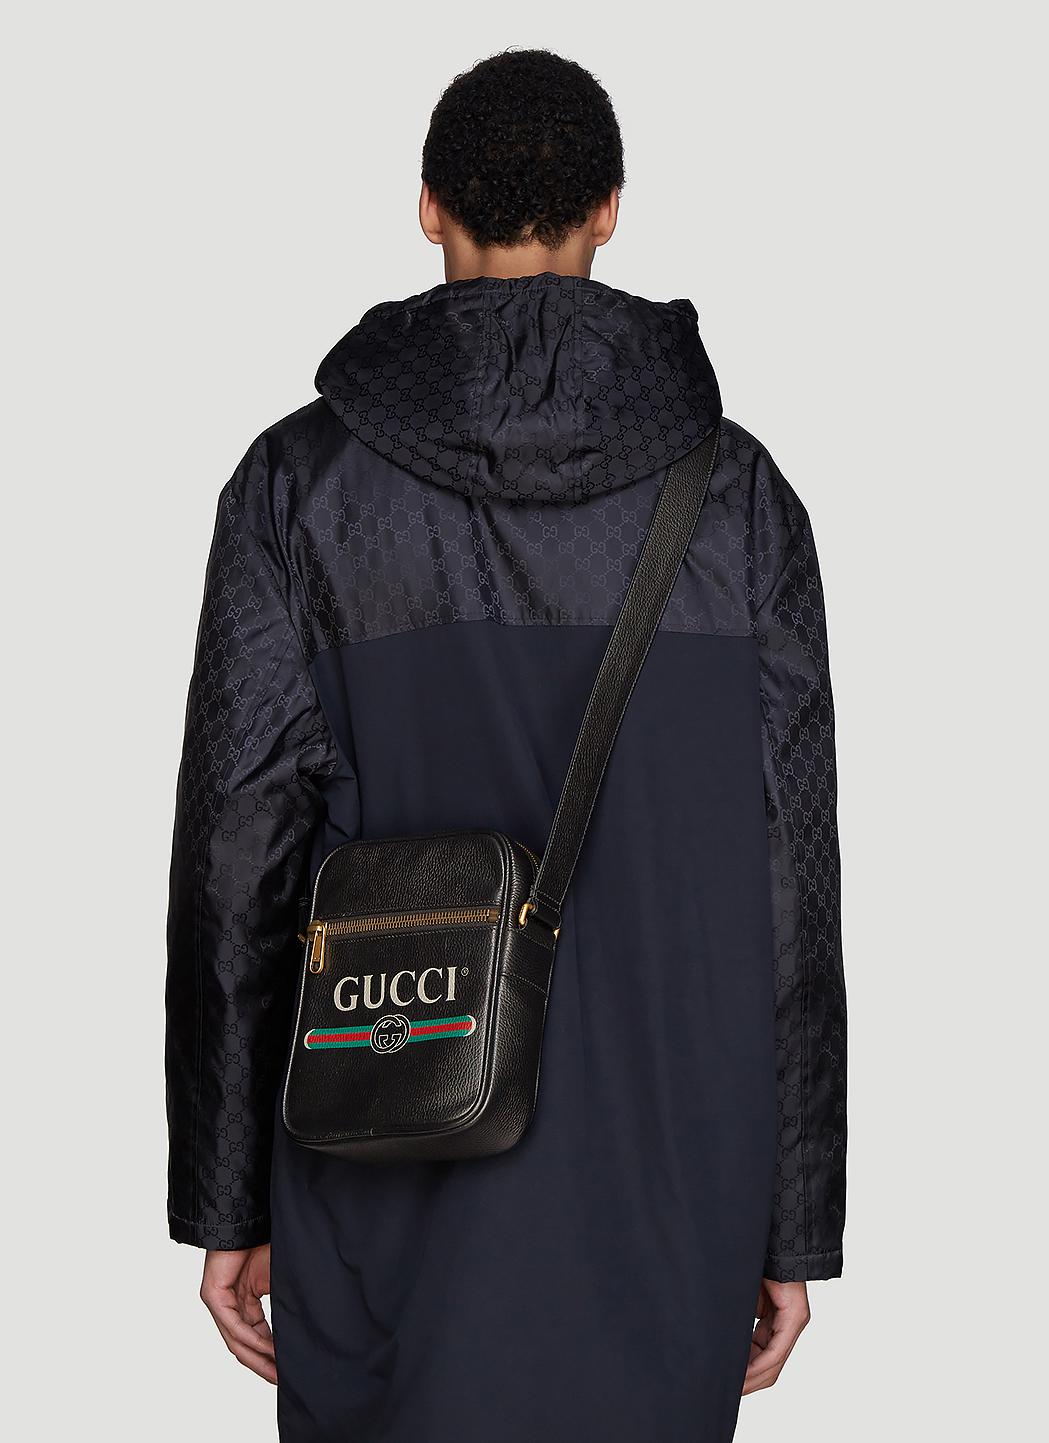 Gucci Print Messenger Bag In Black in Black for Men - Lyst